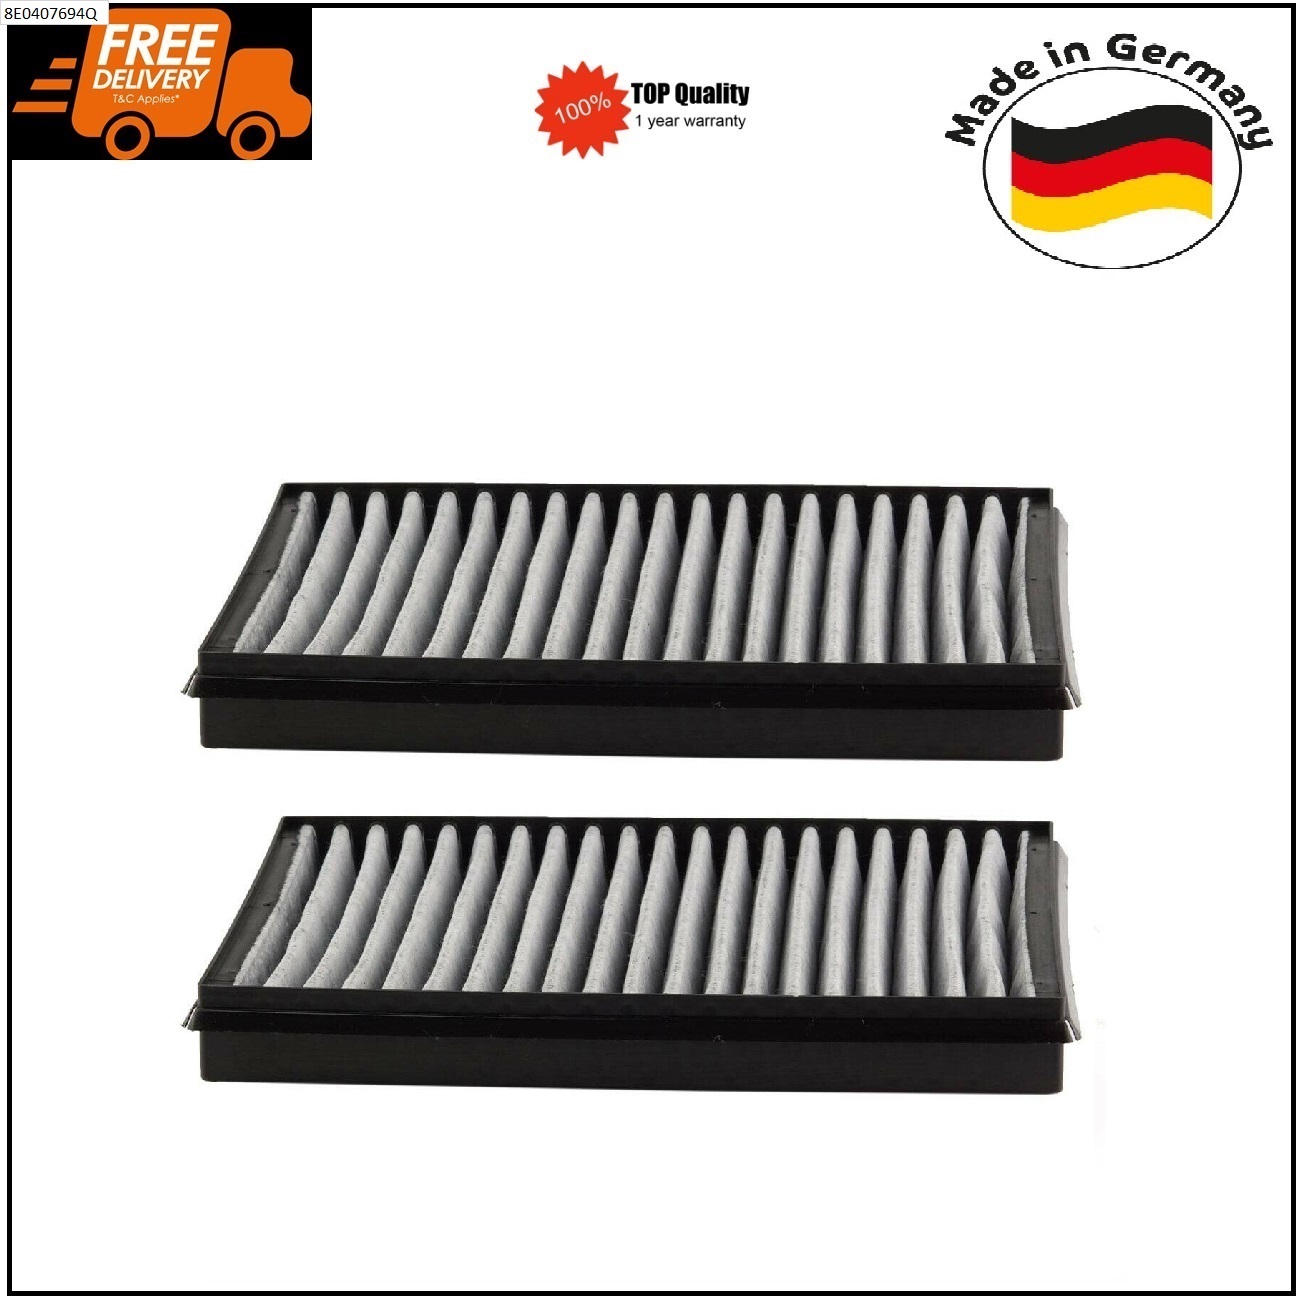 2 x Carbon Air Filters for BMW E39 520i 523i 525i 530i 535i 64110008138 German Made